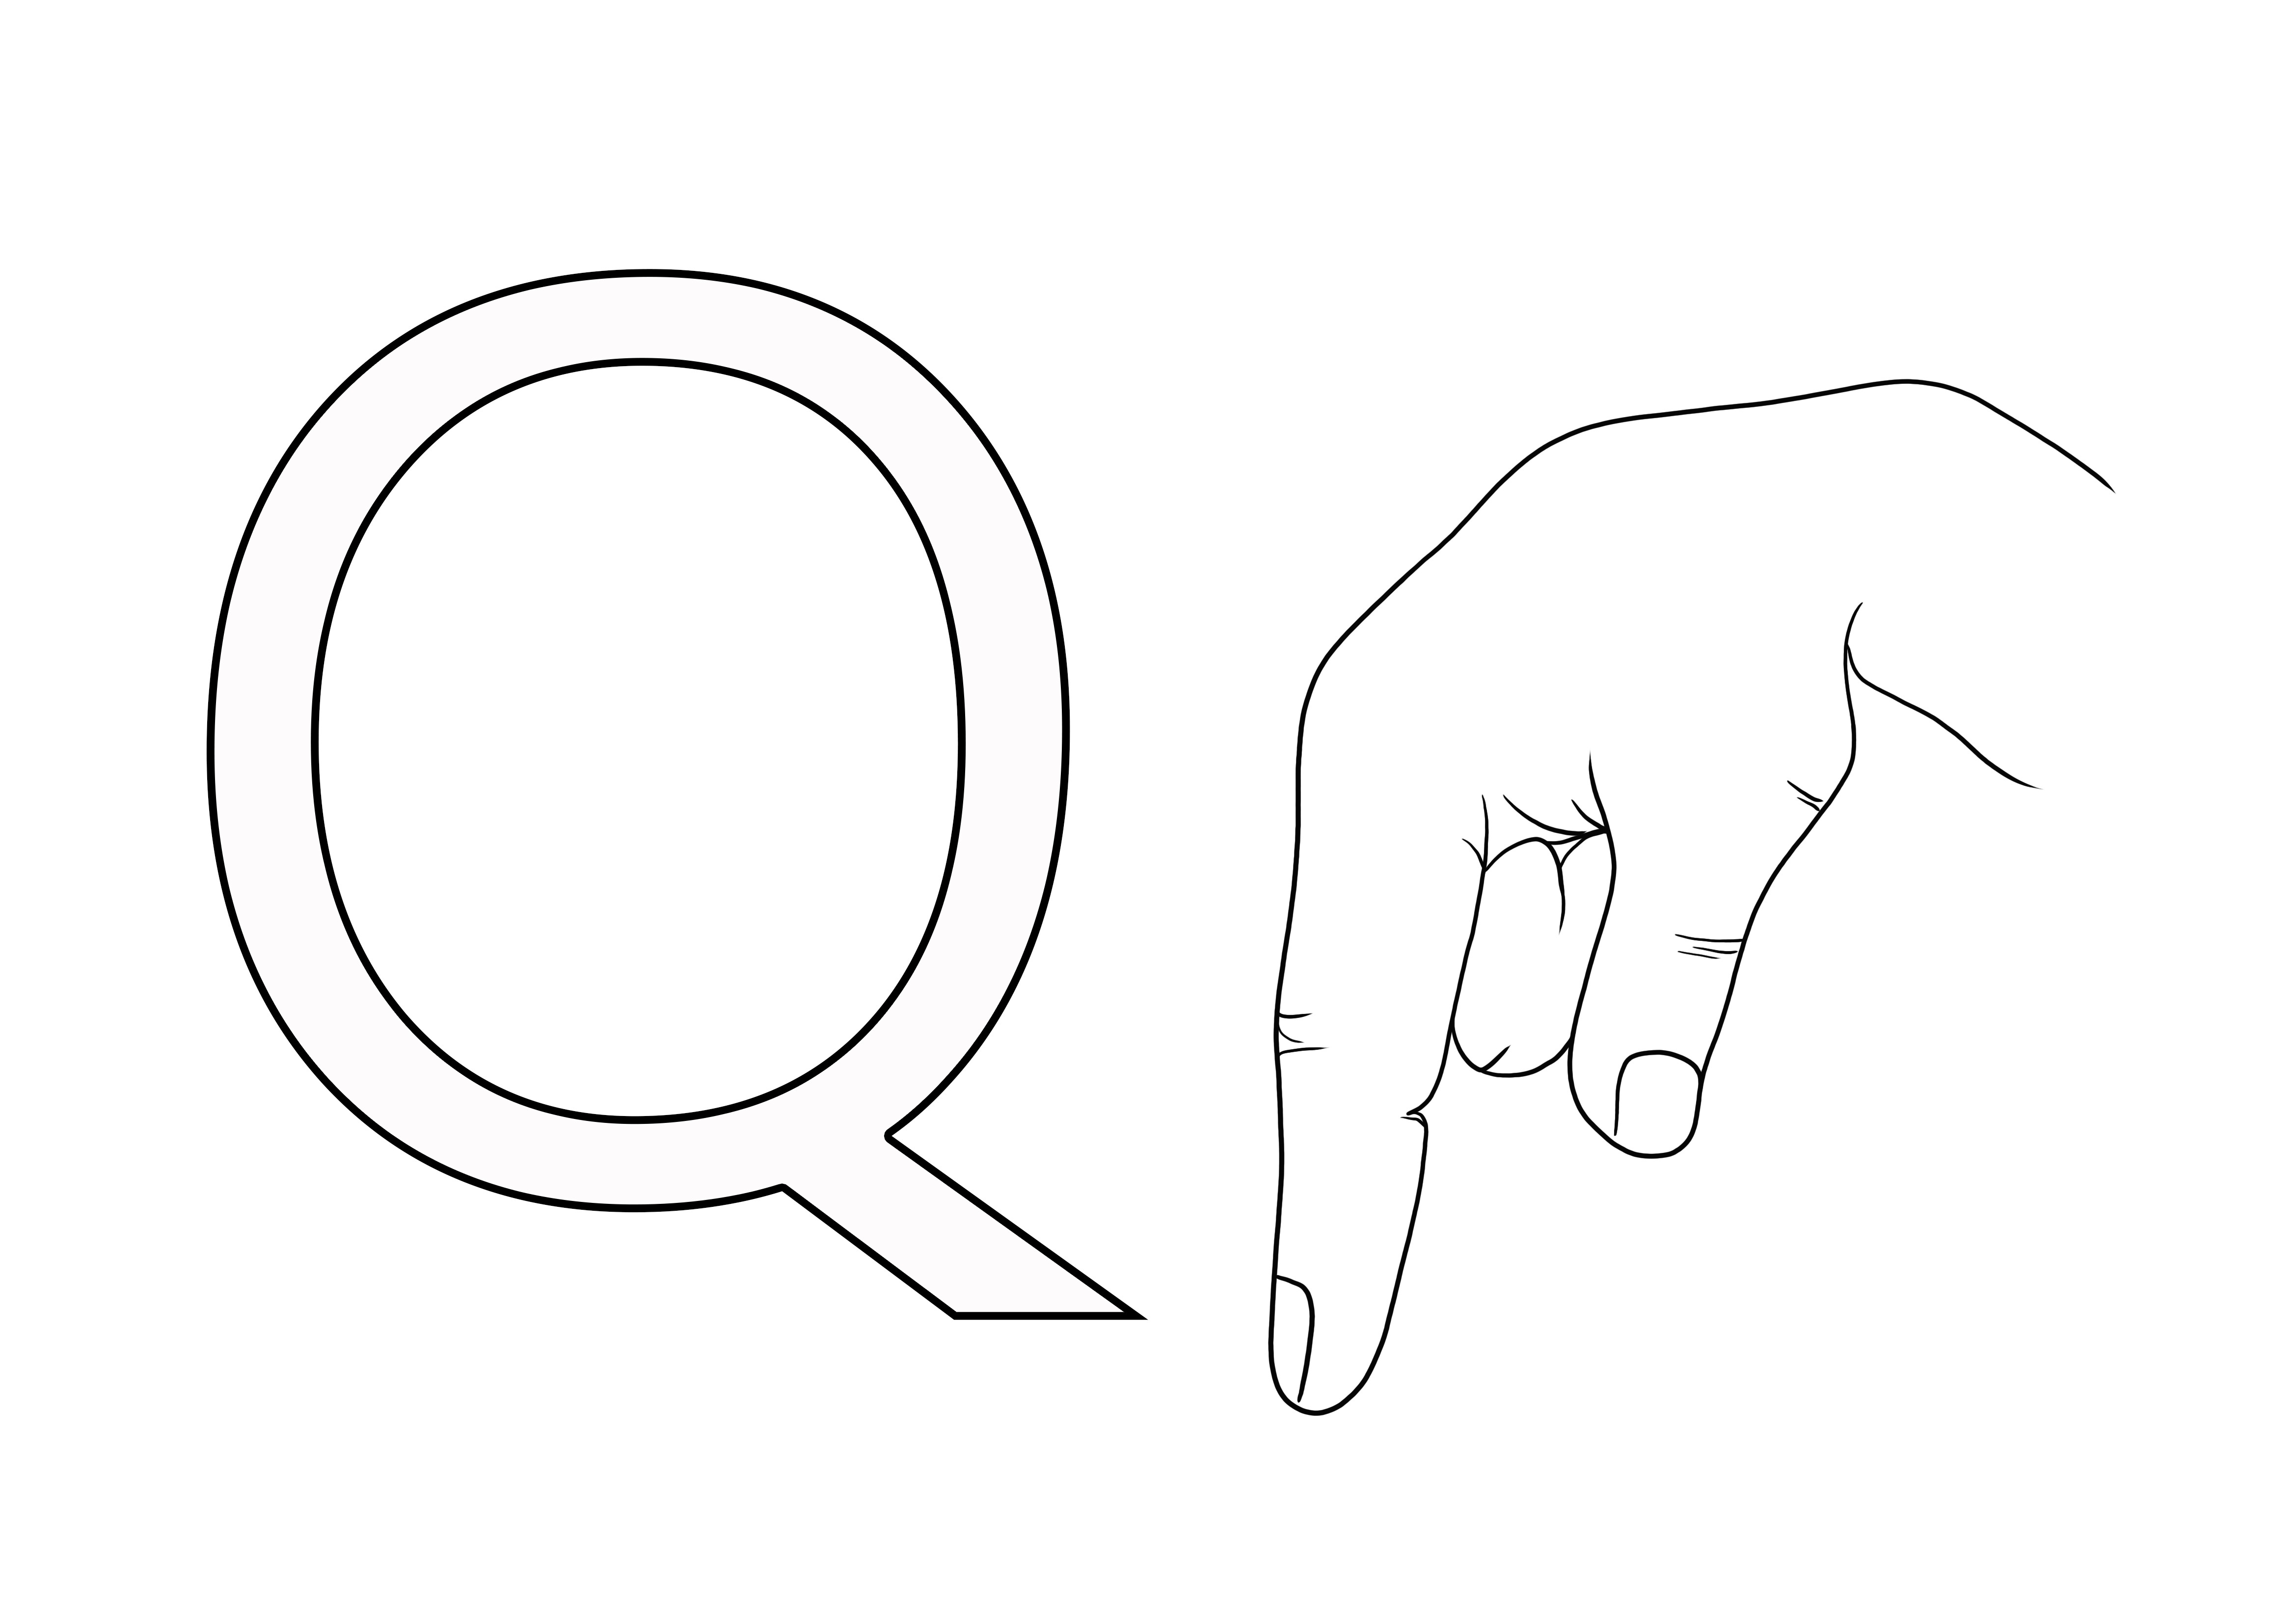 Az ASL jelnyelvű Q betű ingyenesen nyomtatható színesben, hogy a gyerekek könnyen megtanulják az ASL-t